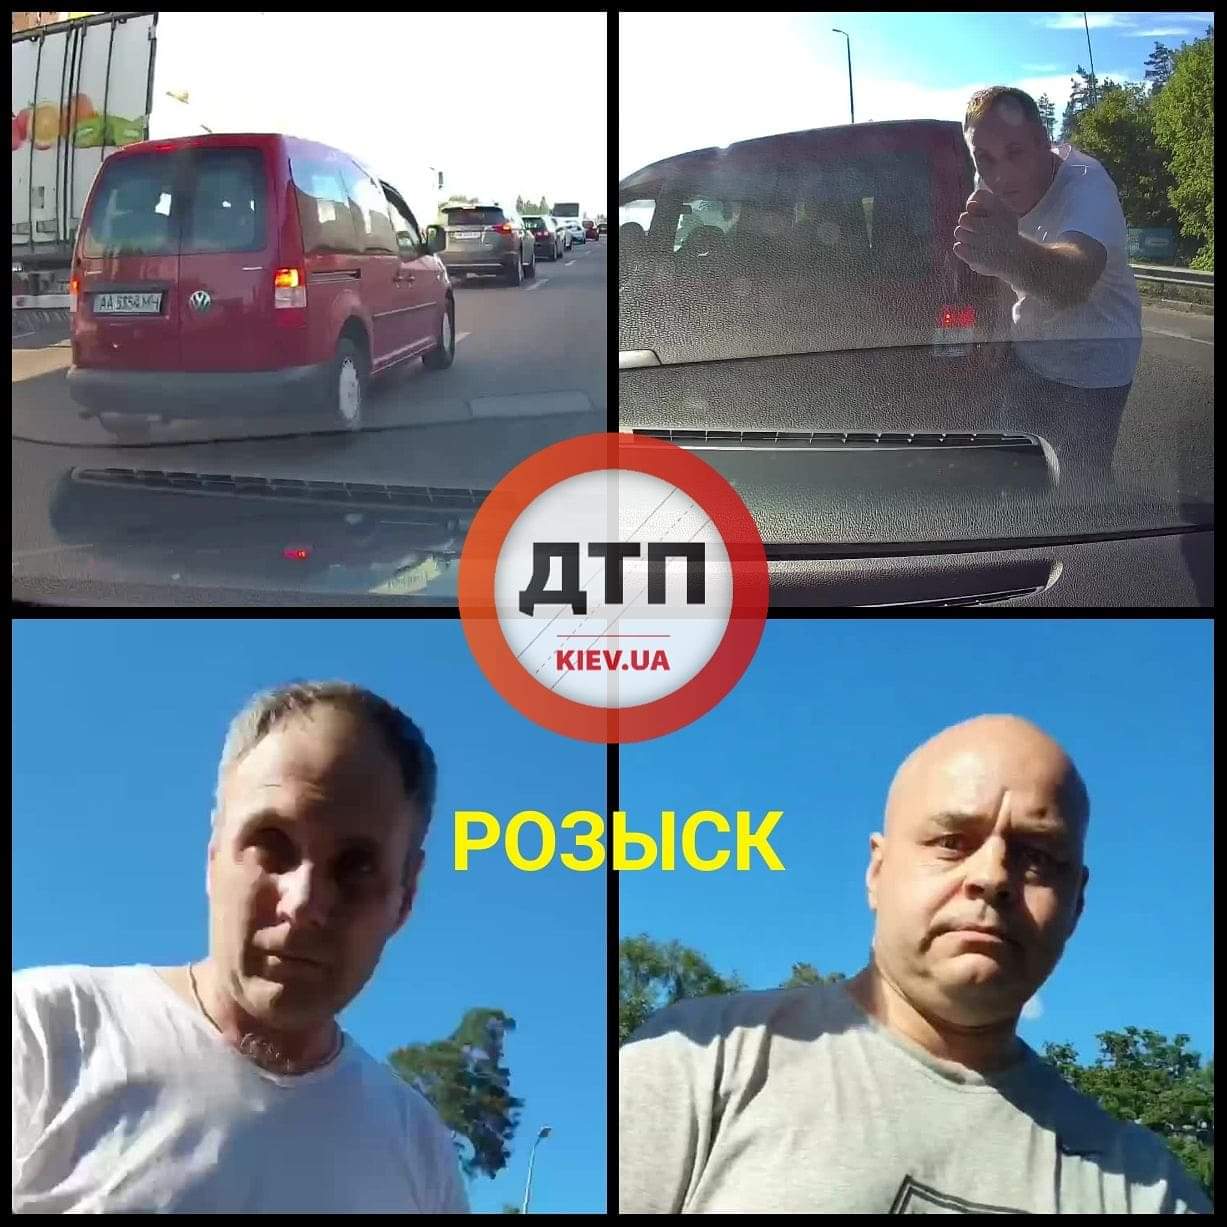 В Киеве разыскивают двоих мужчин на красном Volkswagen, которые спровоцировали разборки на дороге и нанесли ущерб автомобилю